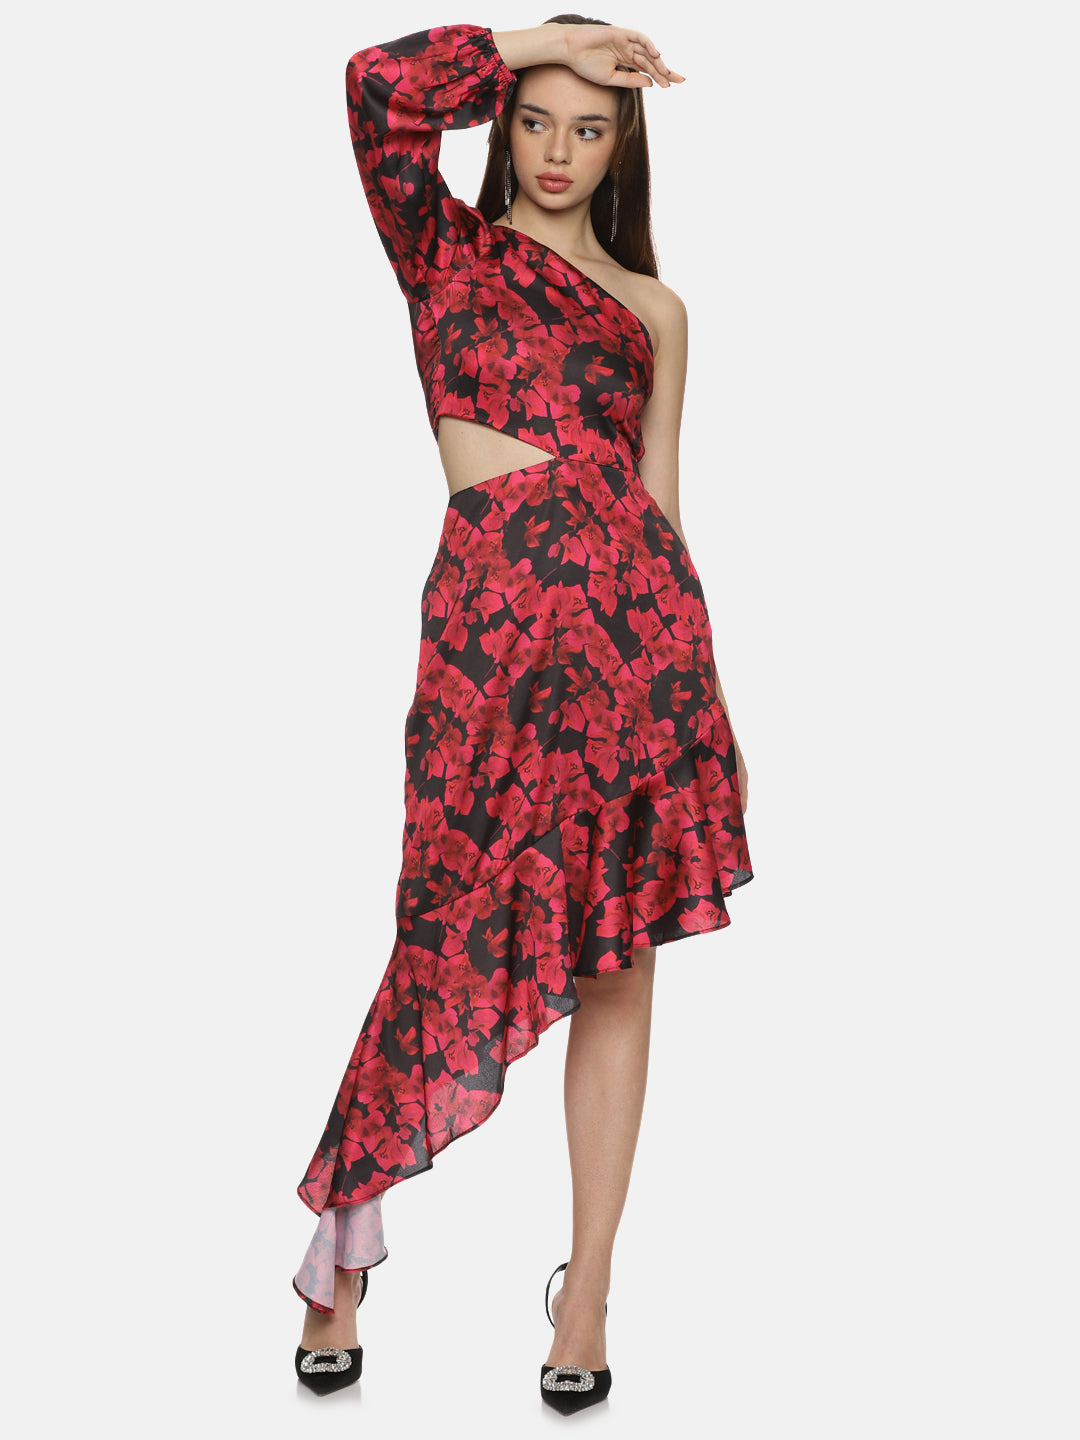 IS.U Floral Red One Shoulder Assymetrical Dress